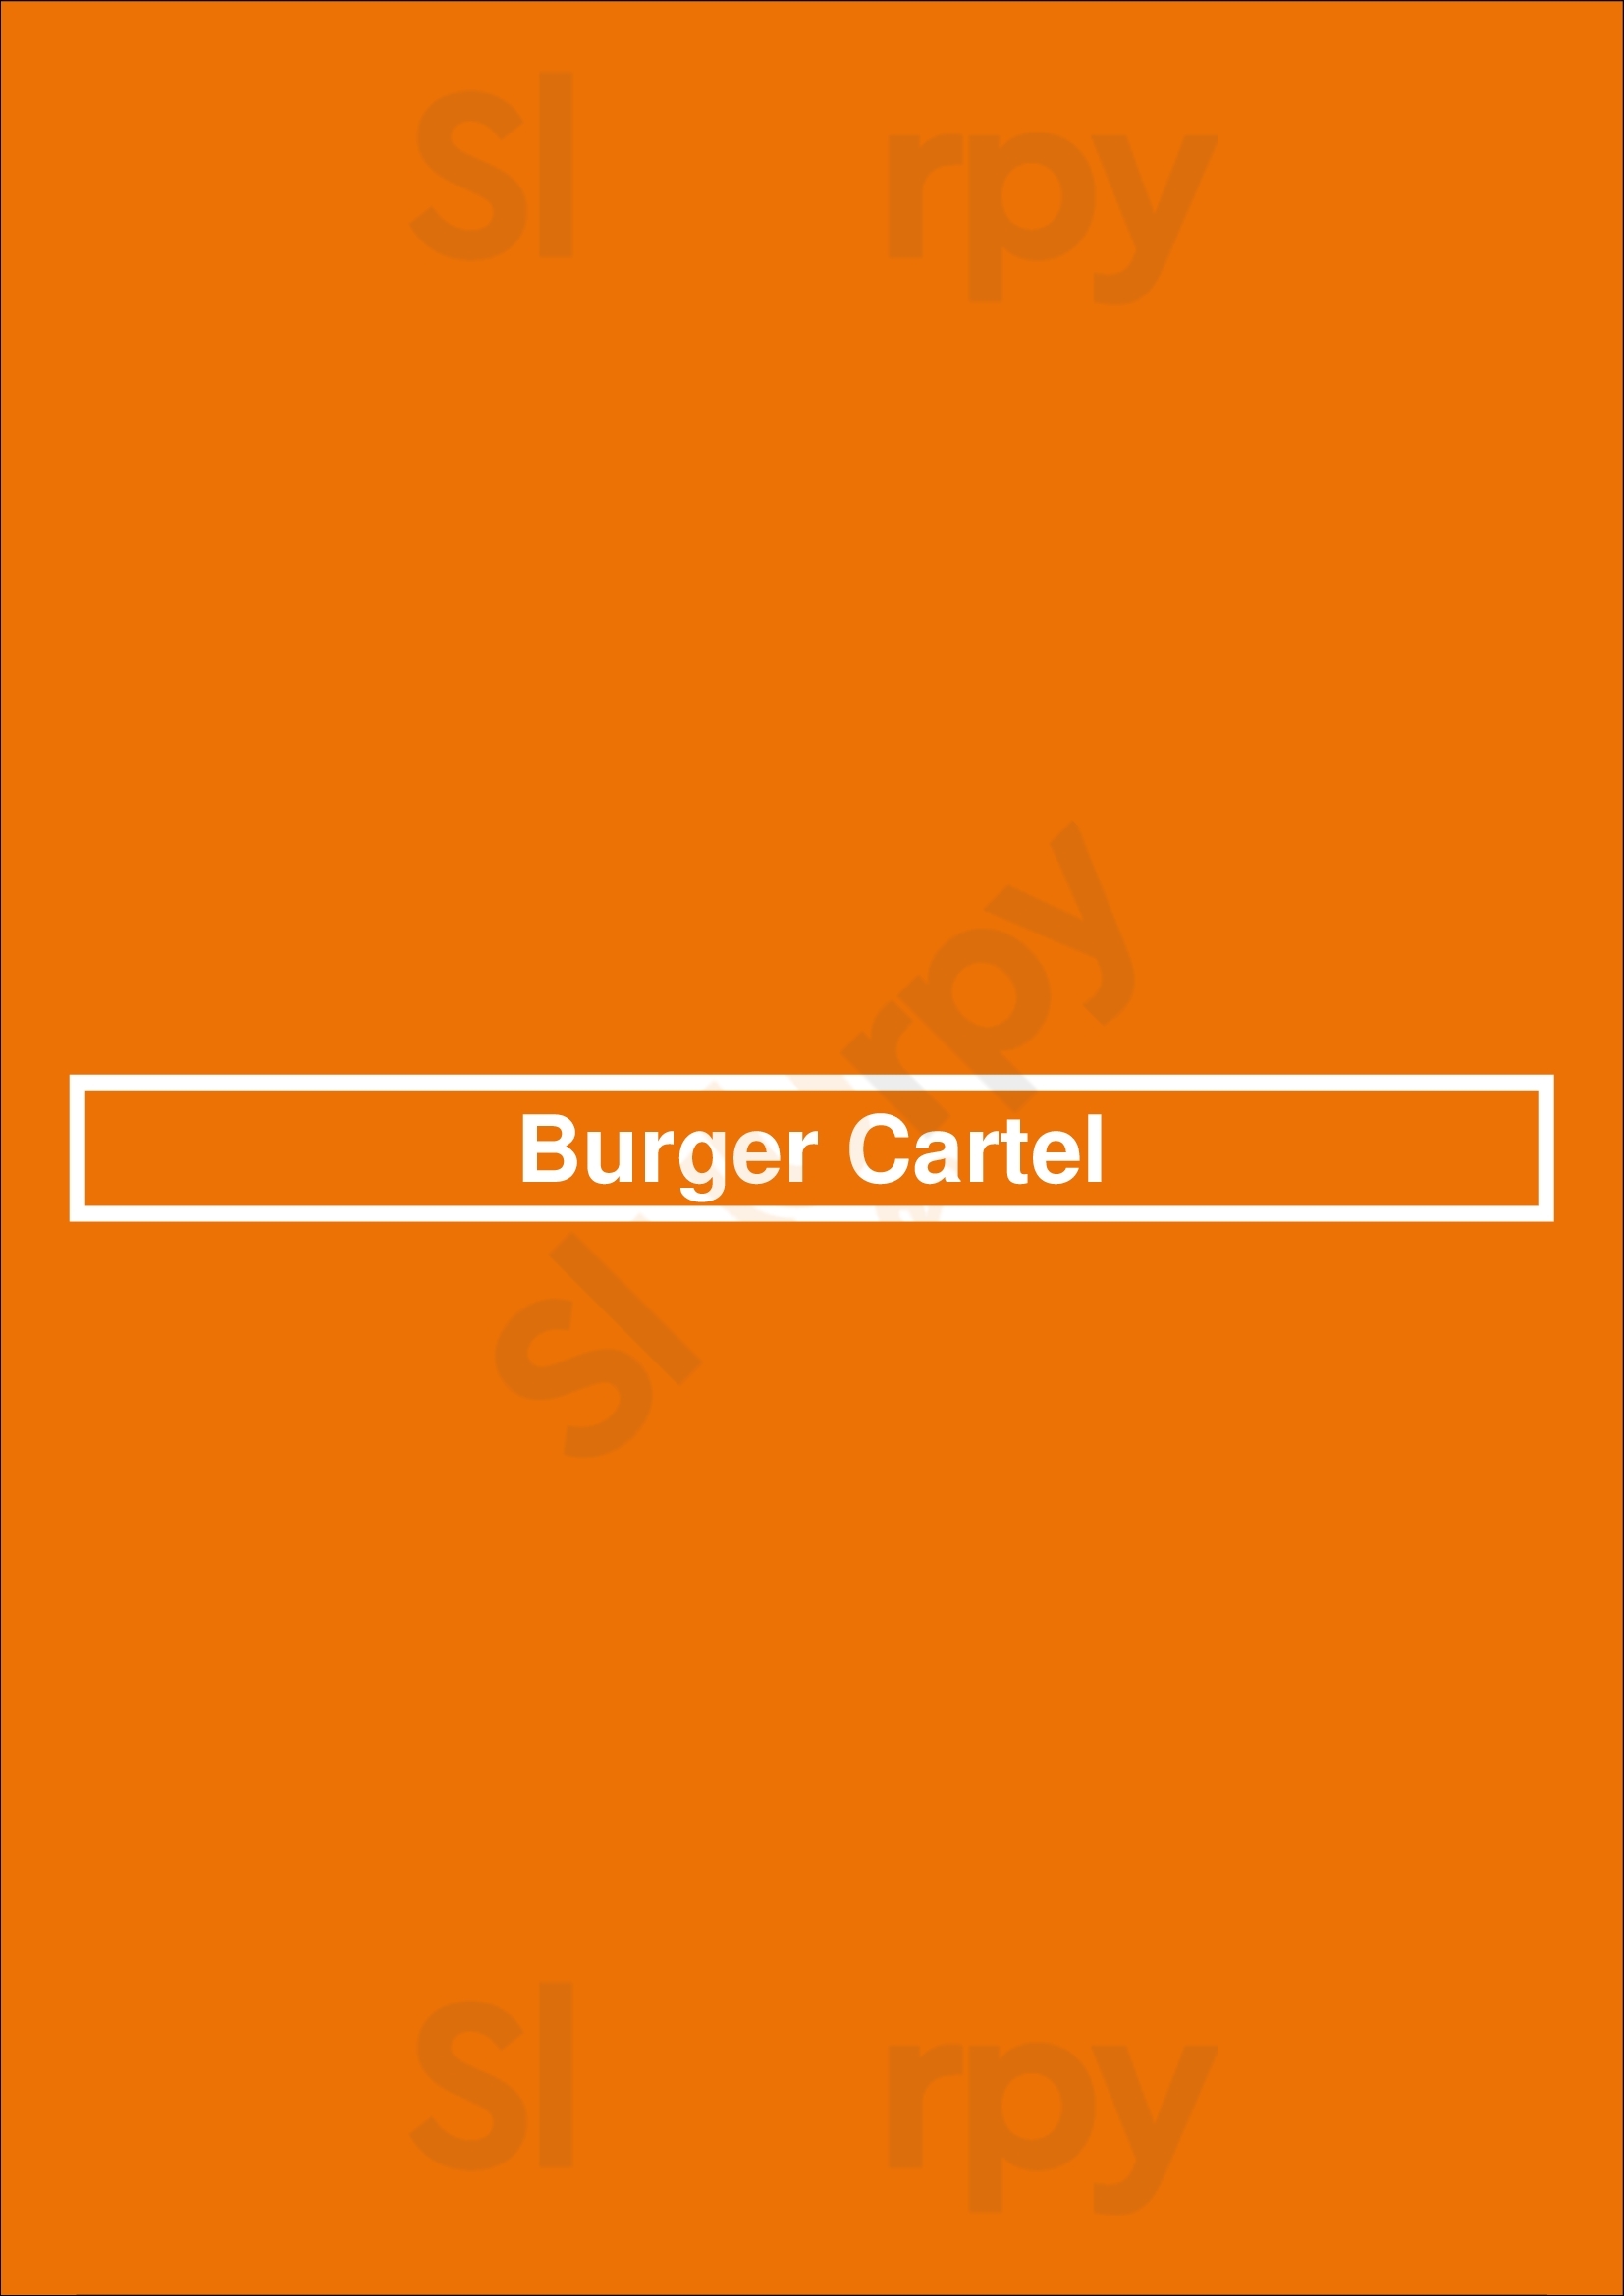 Burger Cartel Zaandam Menu - 1